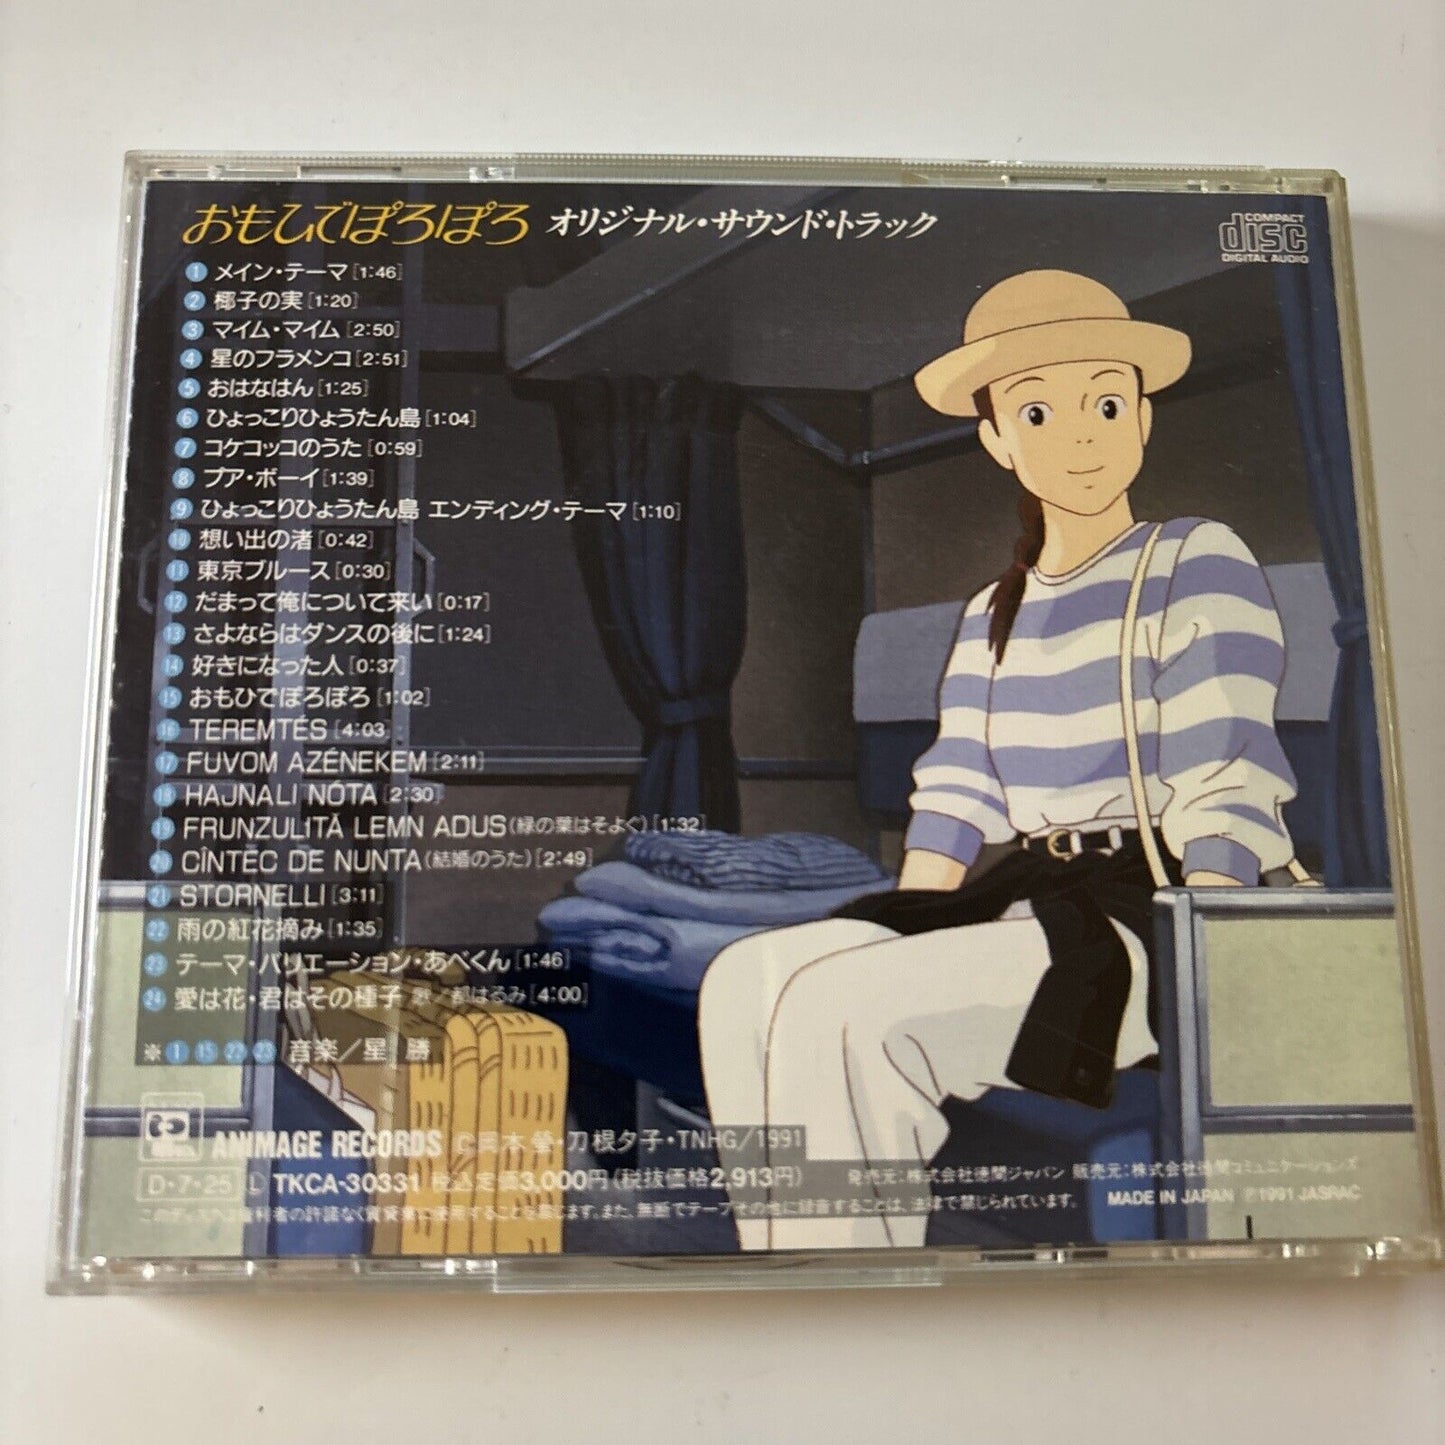 Only Yesterday - Studio Ghibli Movie Soundtrack (CD, 1991) Tkca-30331